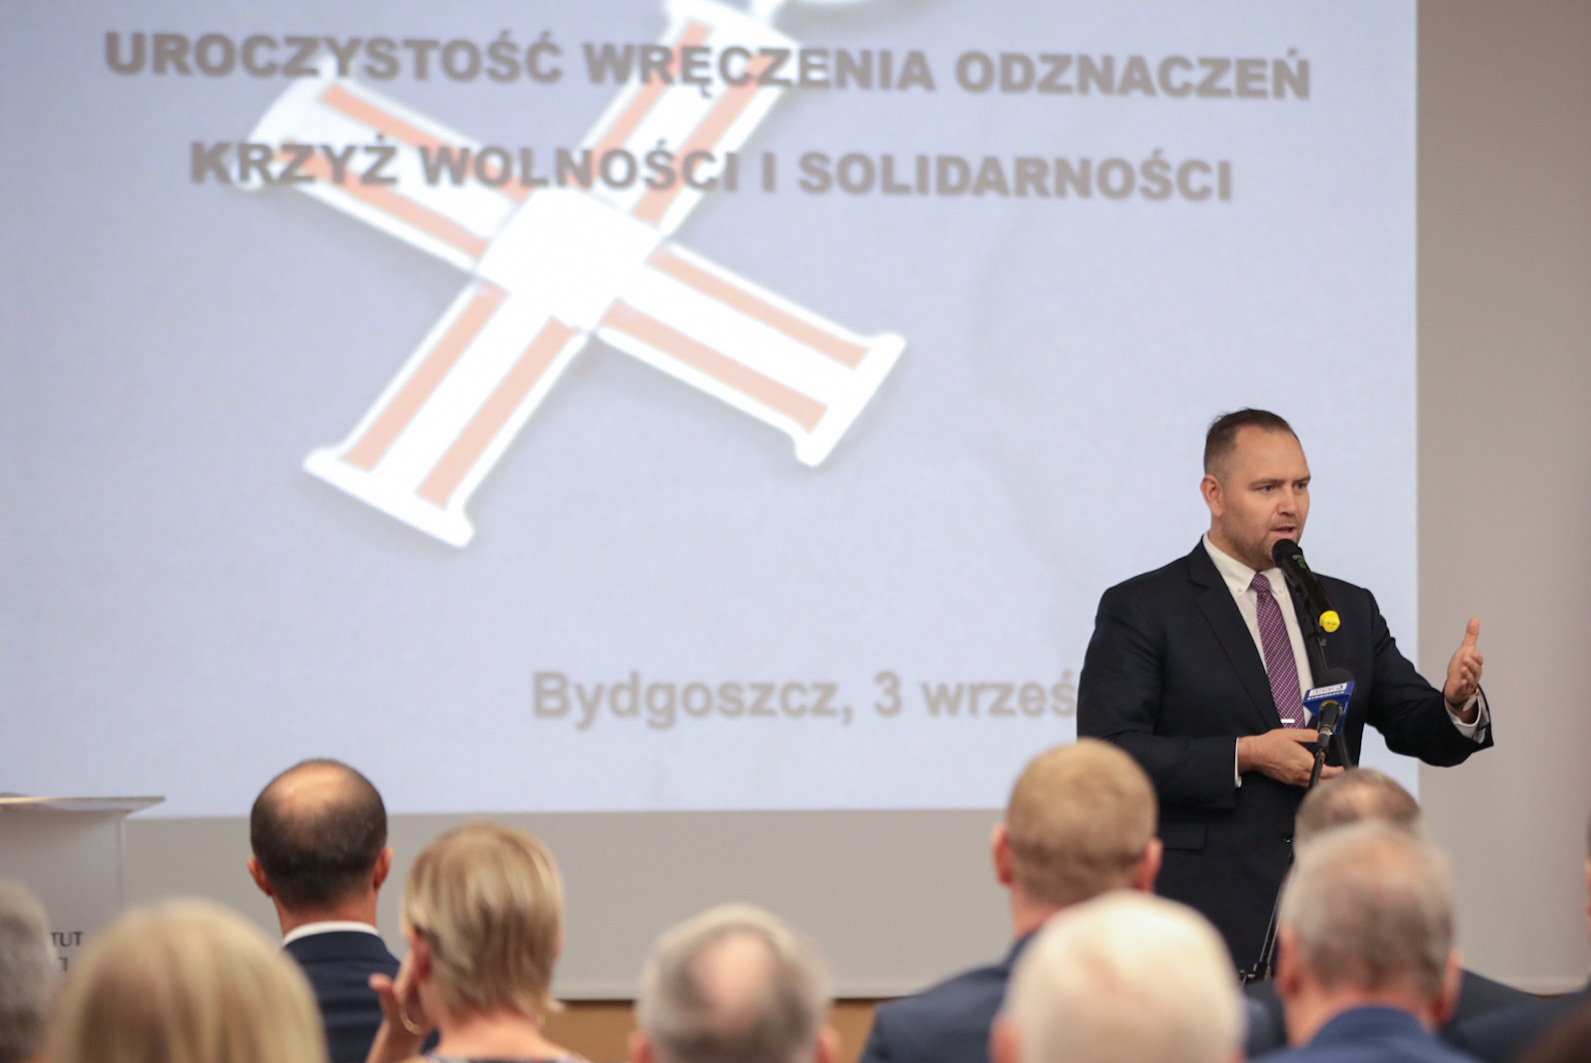 Prezes IPN dr Karol Nawrocki wręczył dawnym opozycjonistom Krzyże Wolności i Solidarności – Bydgoszcz, 3 września 2021. Fot. Mikołaj Bujak (IPN)